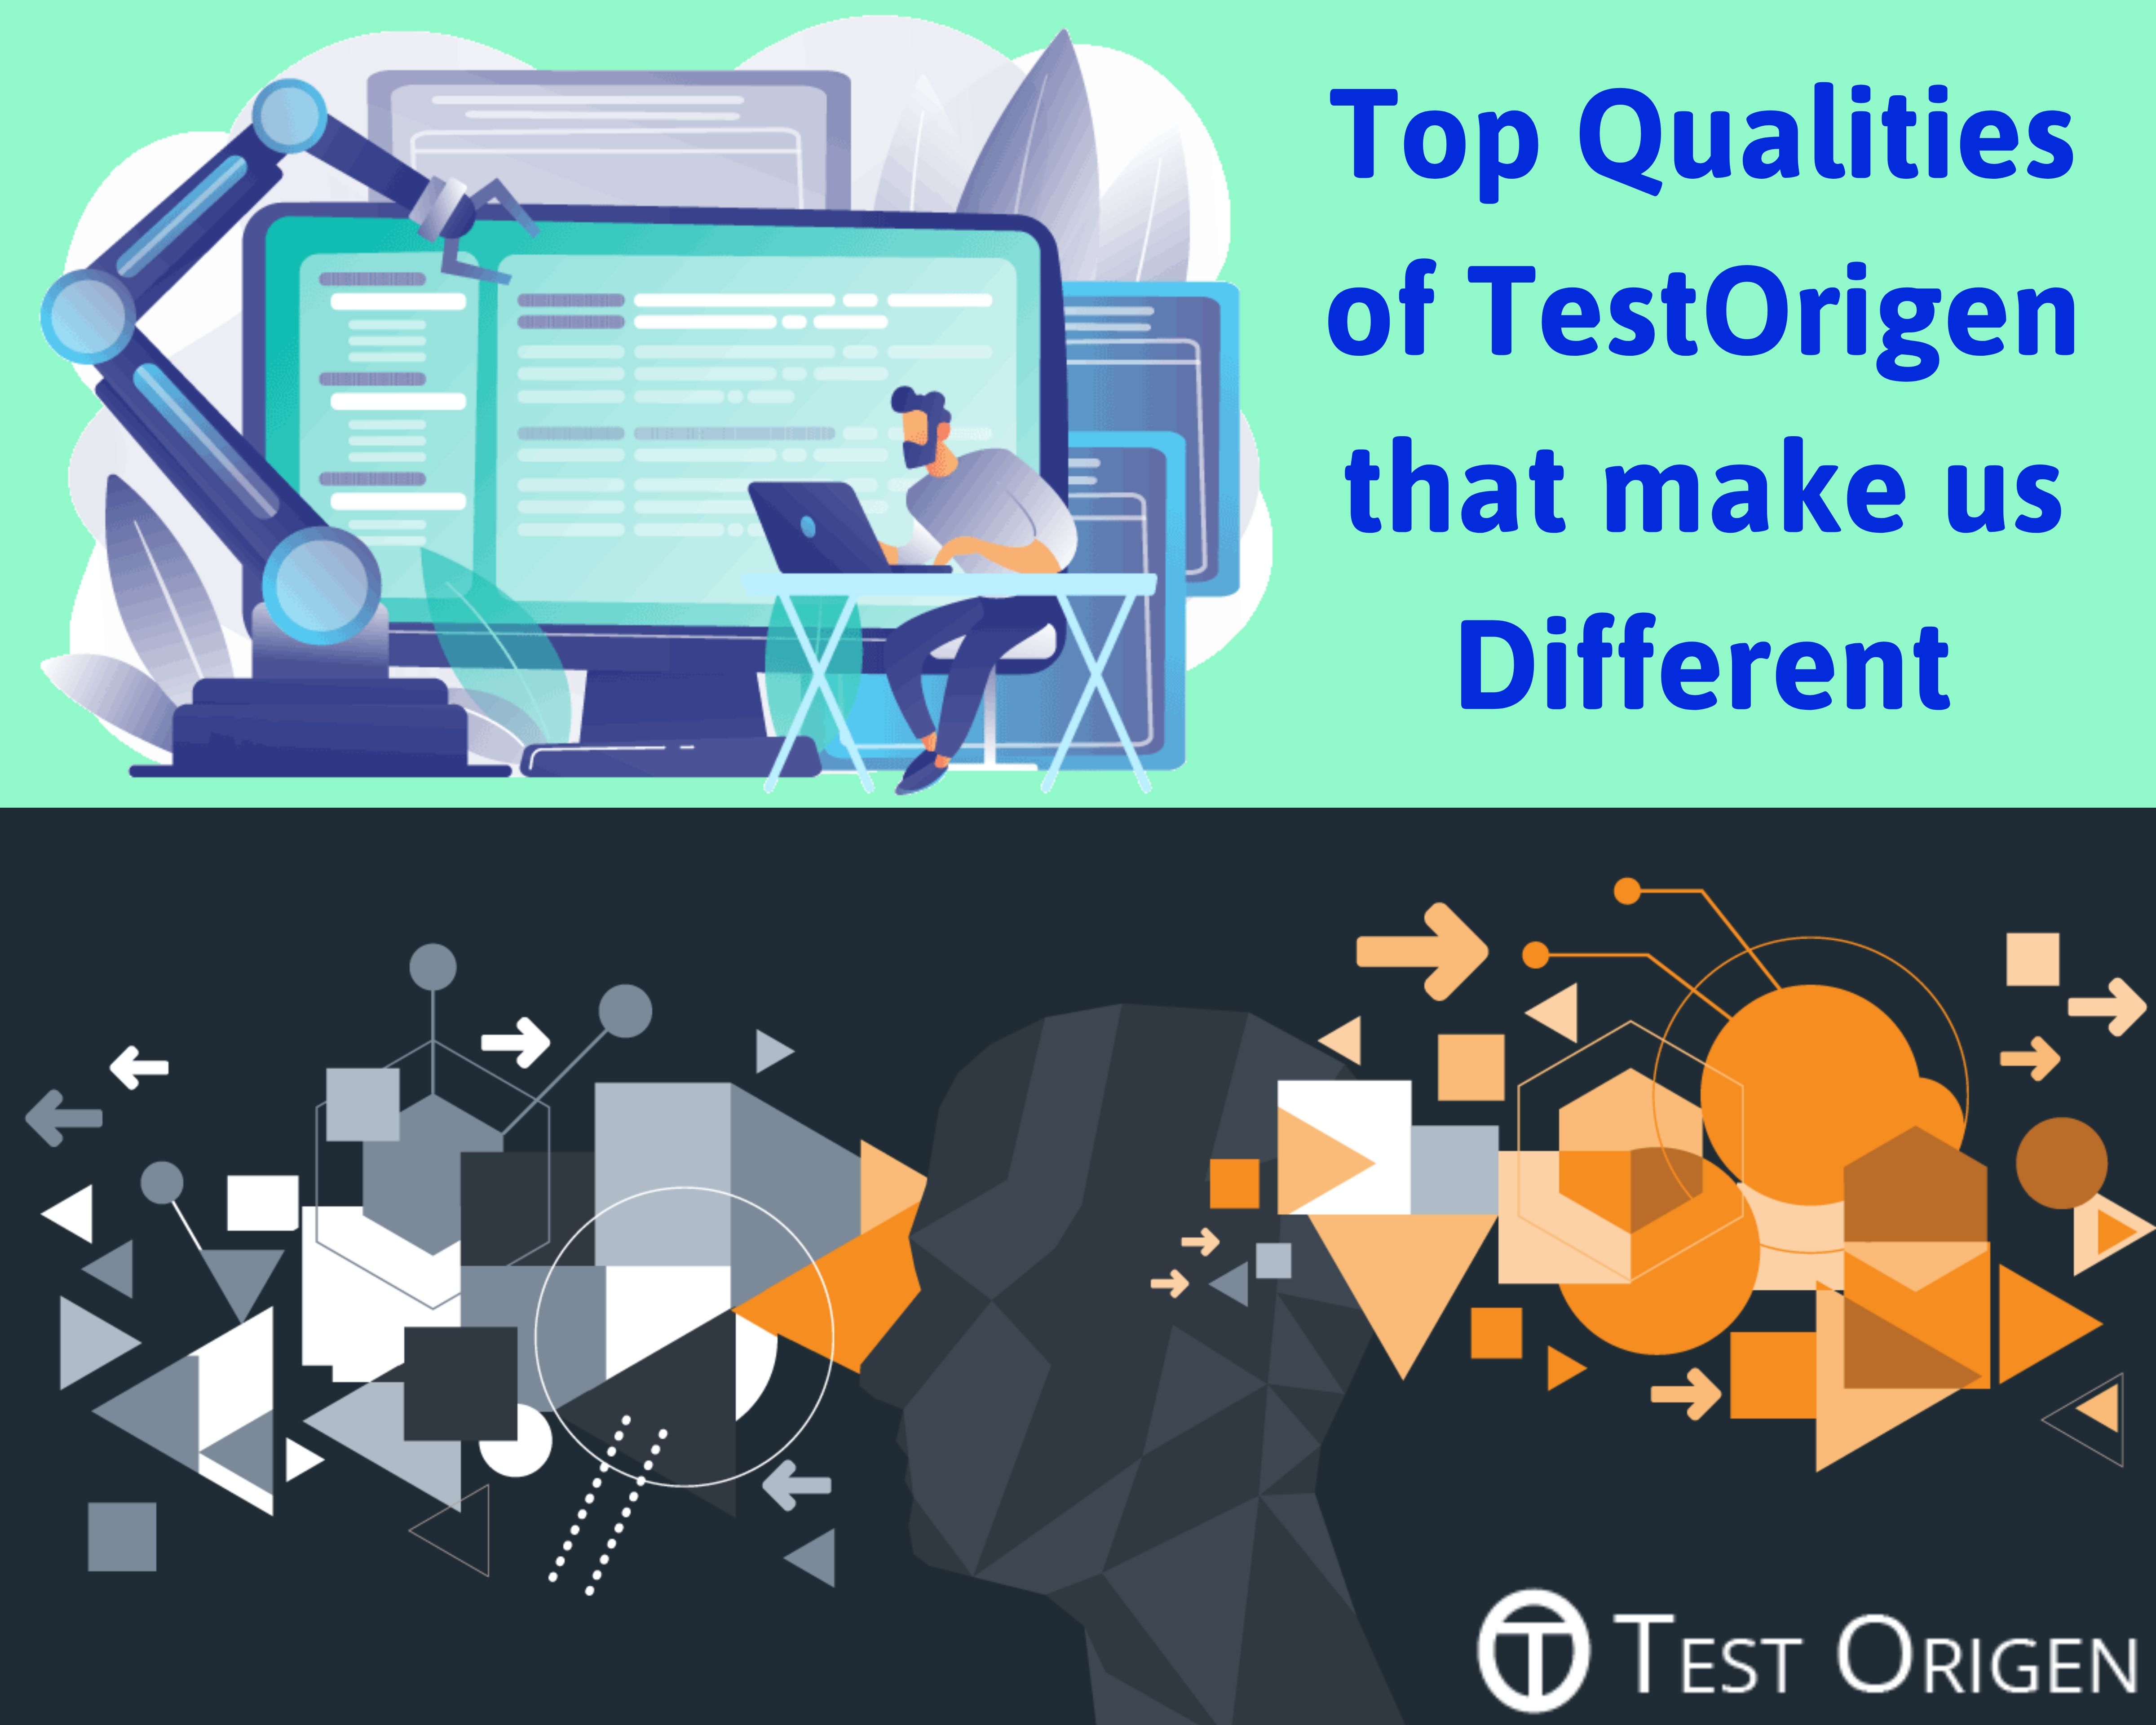 Top Qualities of TestOrigen that make us Different